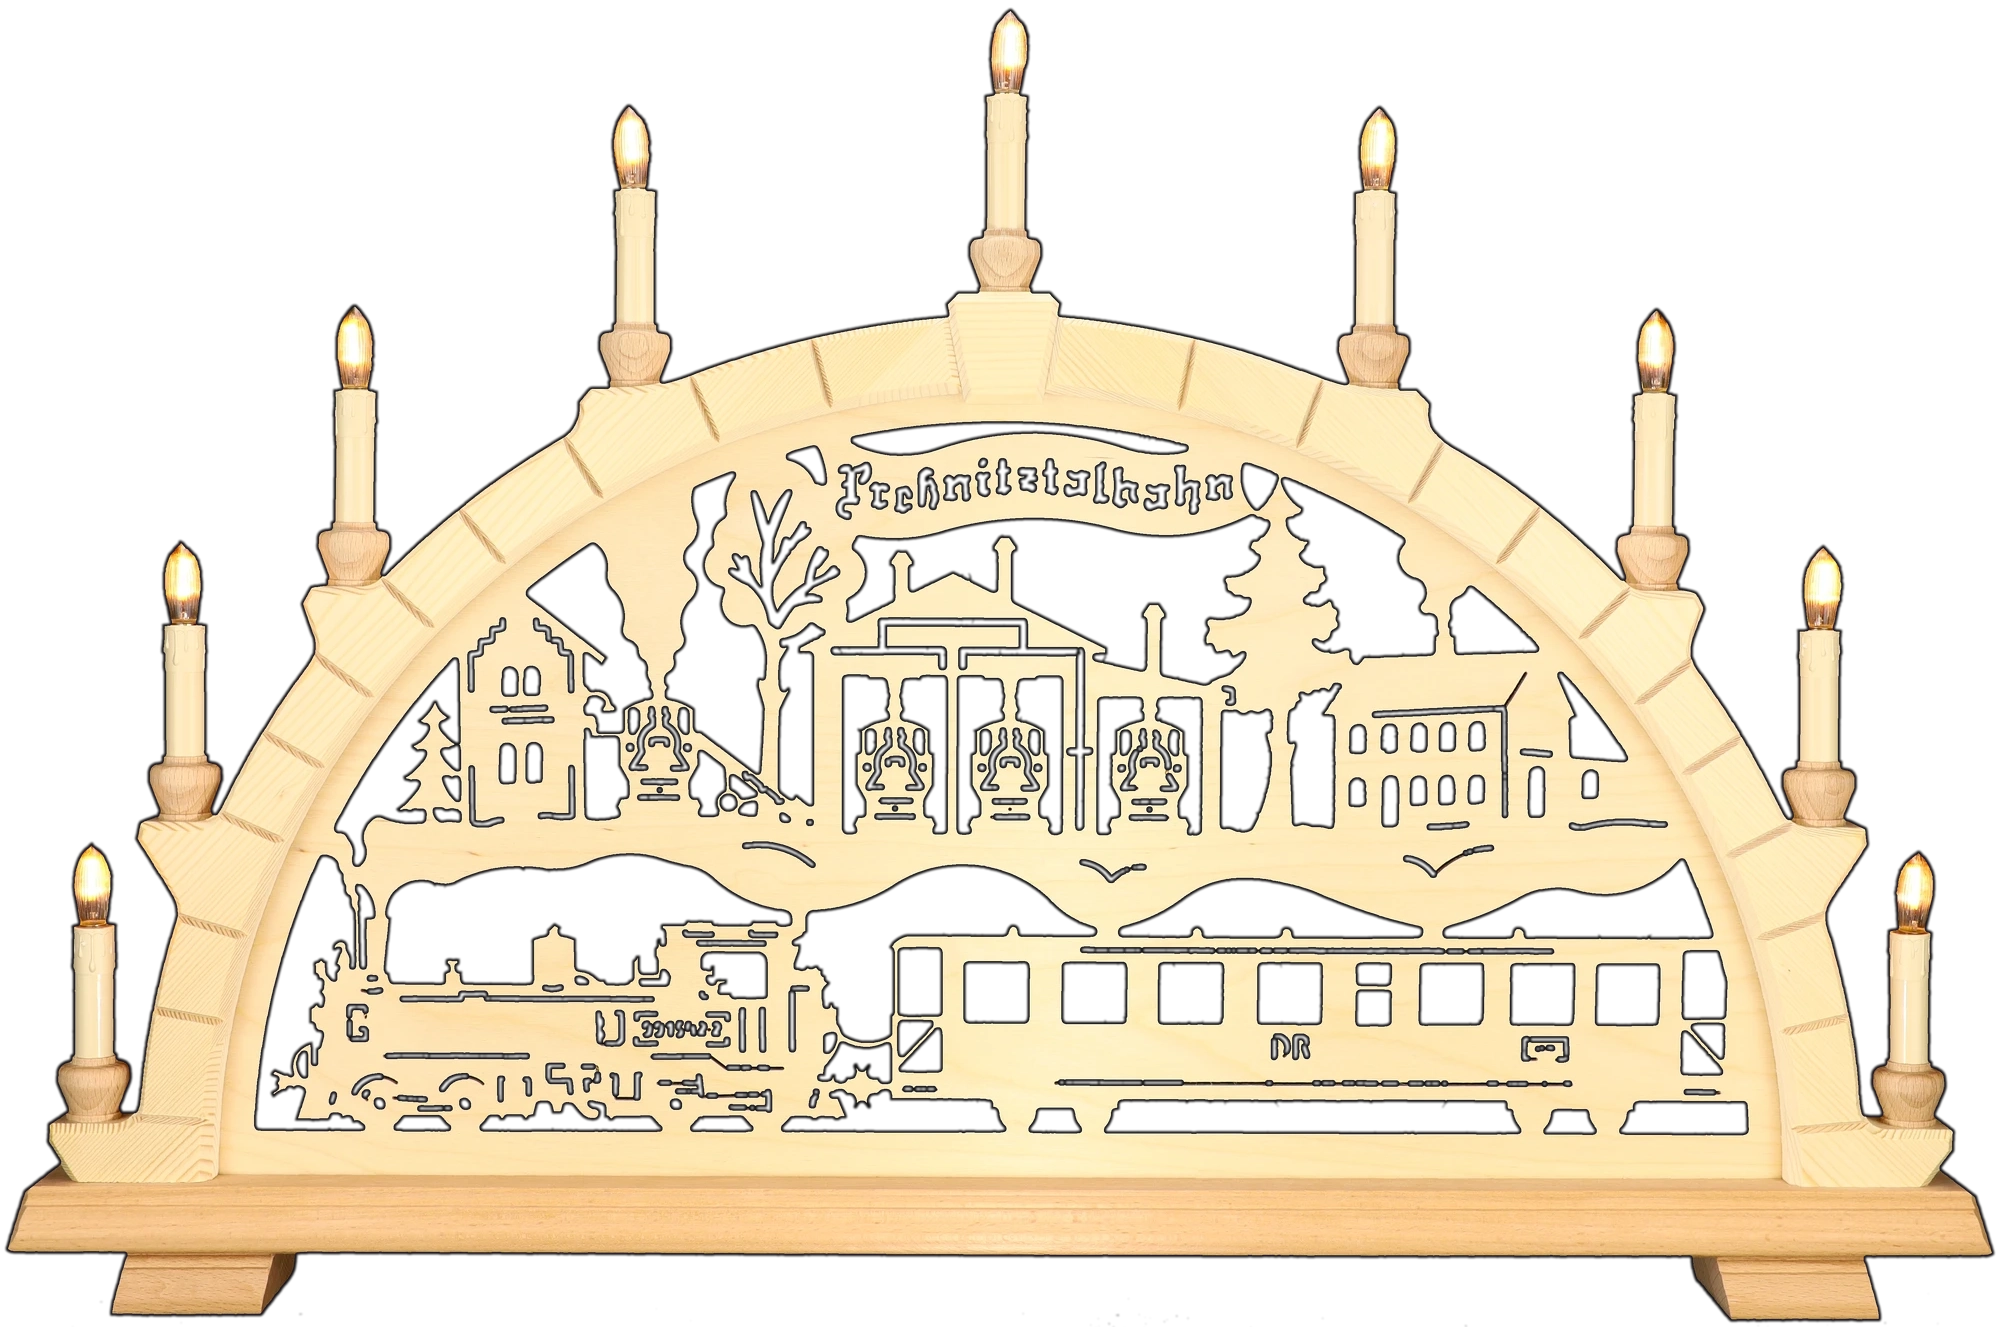 Schwibbogen groß - Motiv Preßnitztalbahn IV-K-Lok Erzgebirge - Breite 74cm - mit LED Licht, warmweiß